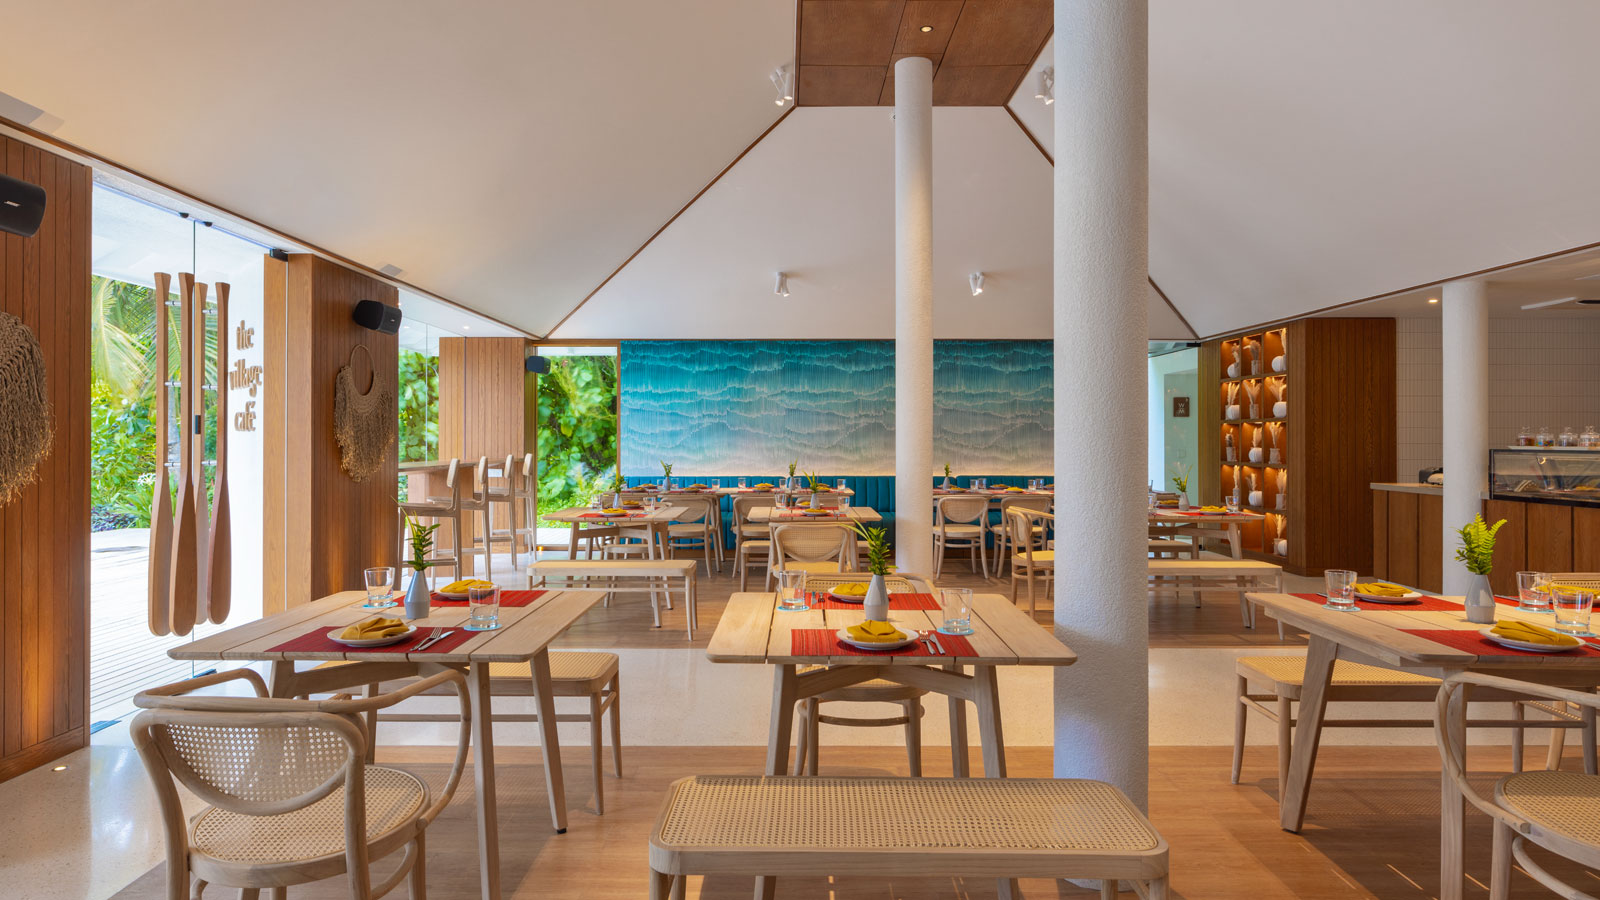 The Village Cafe setting - Amari Raaya Maldives